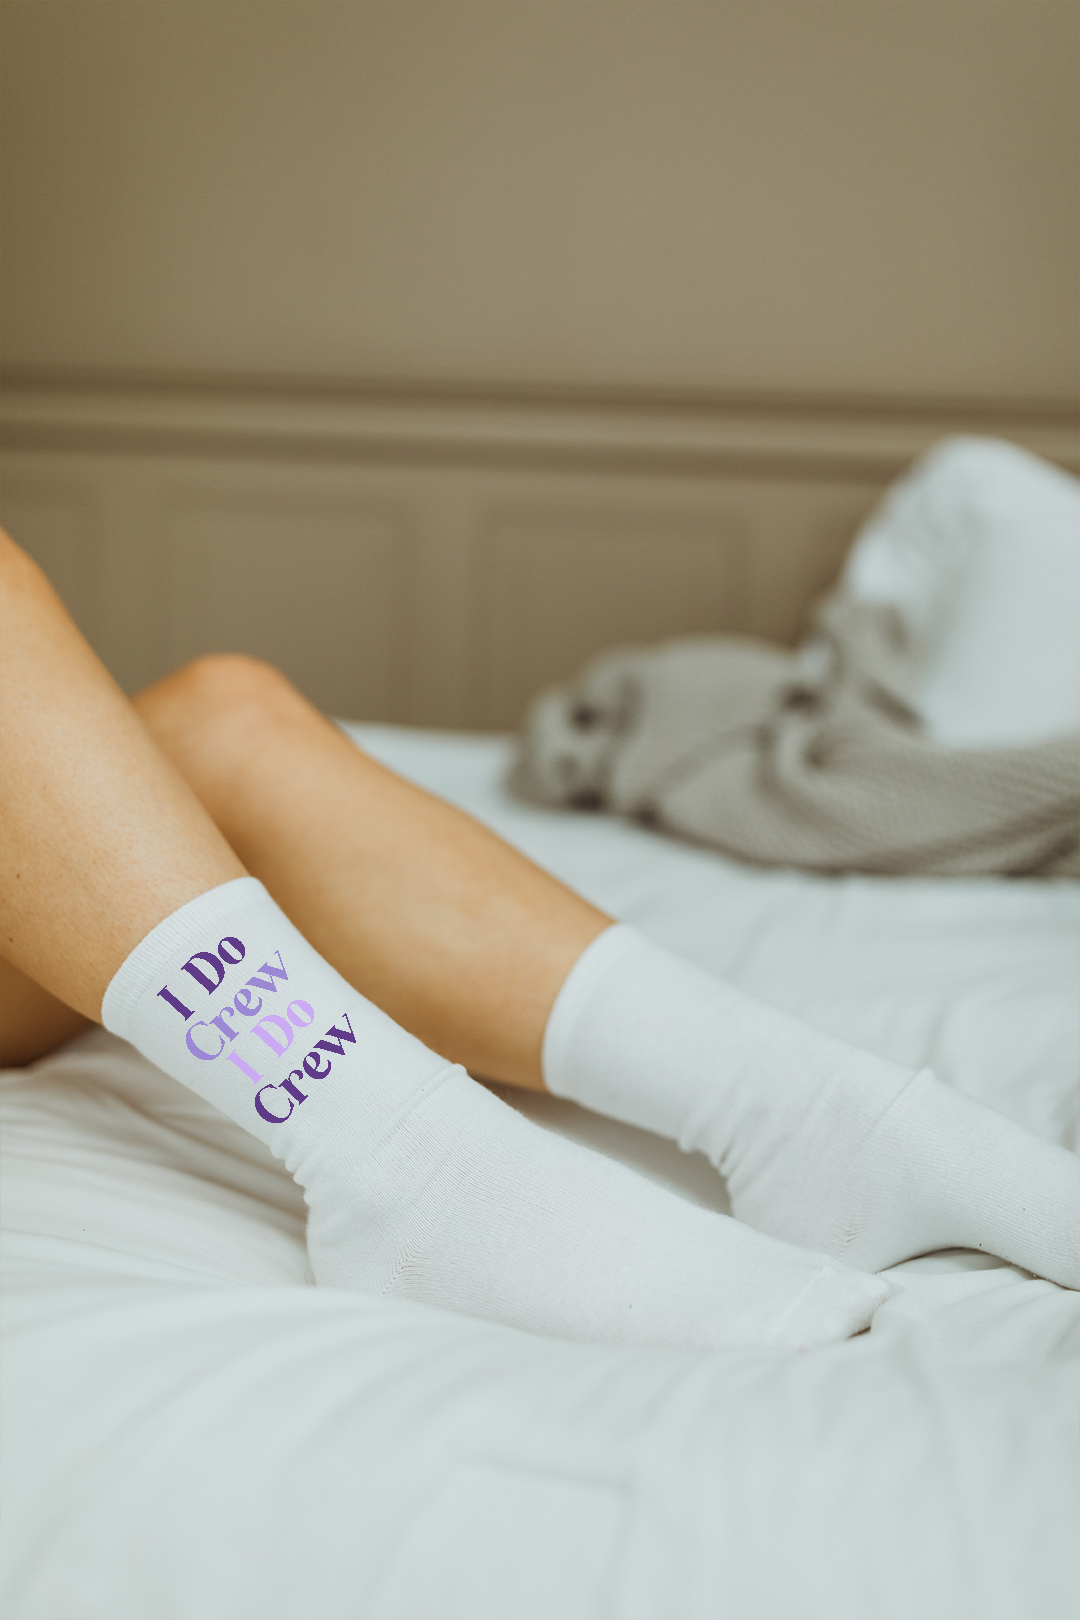 Purple Palette socks - choose your text!